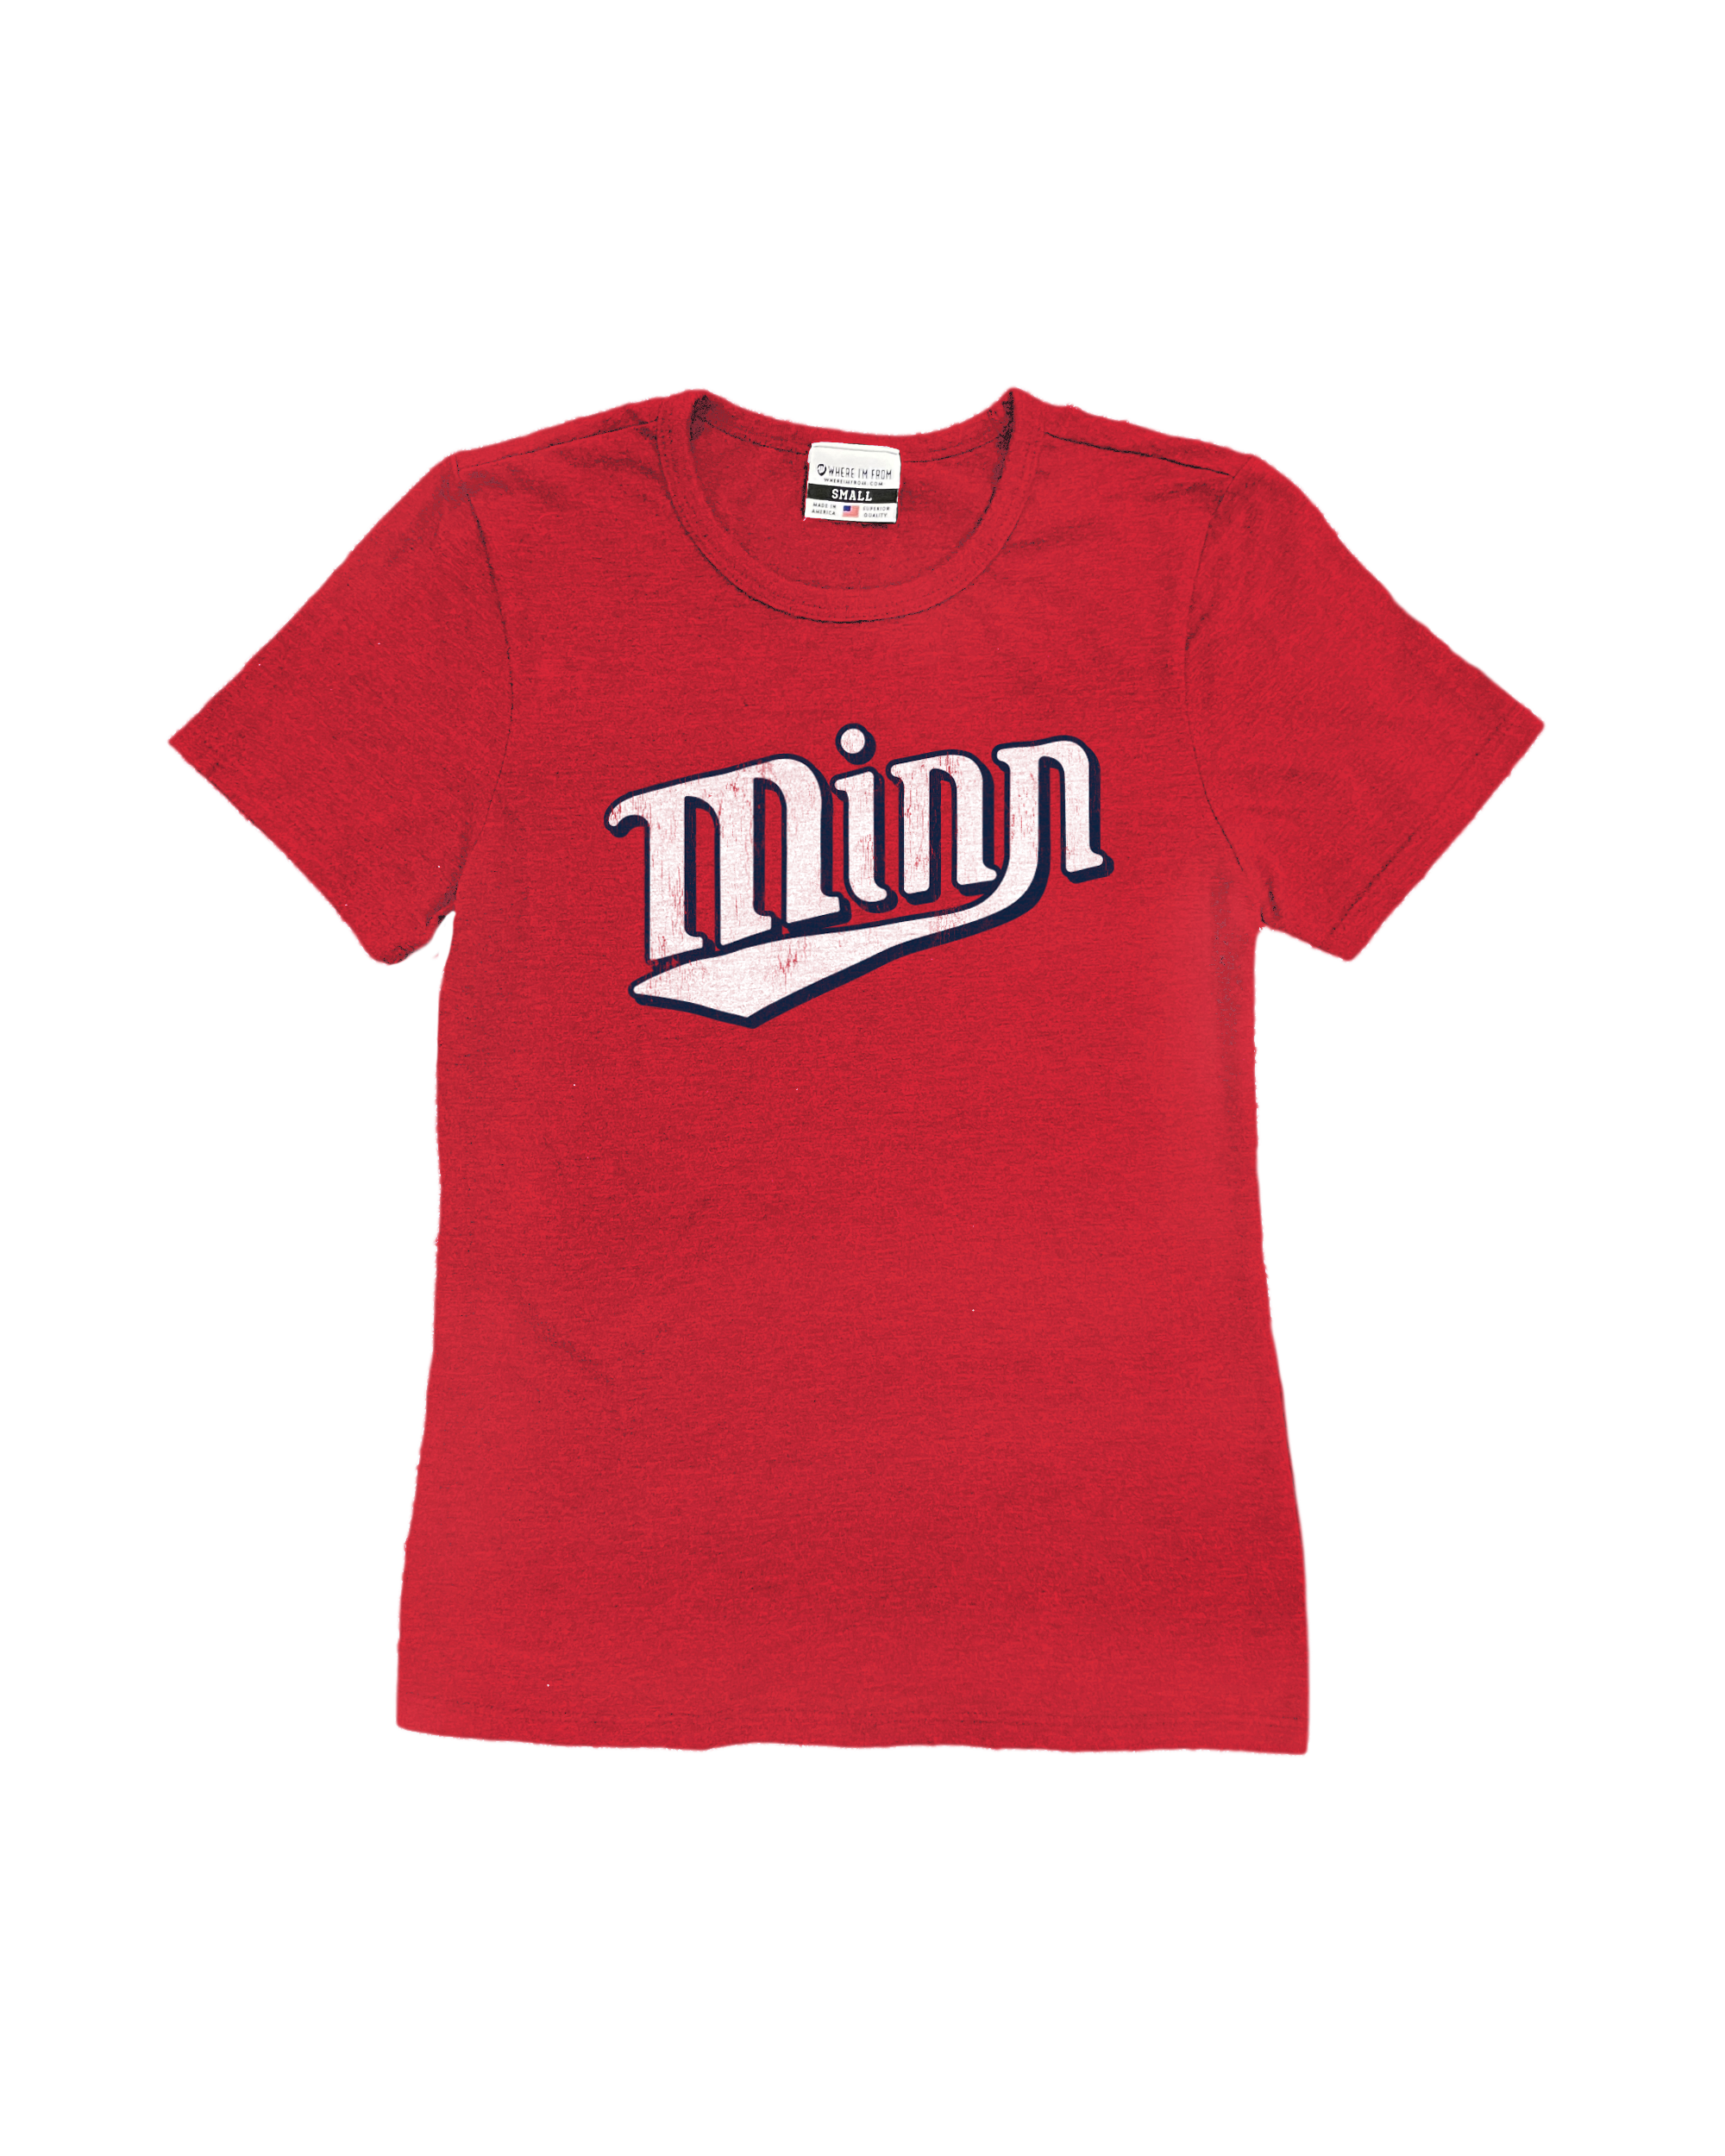 Minn Red Women’s T-shirt